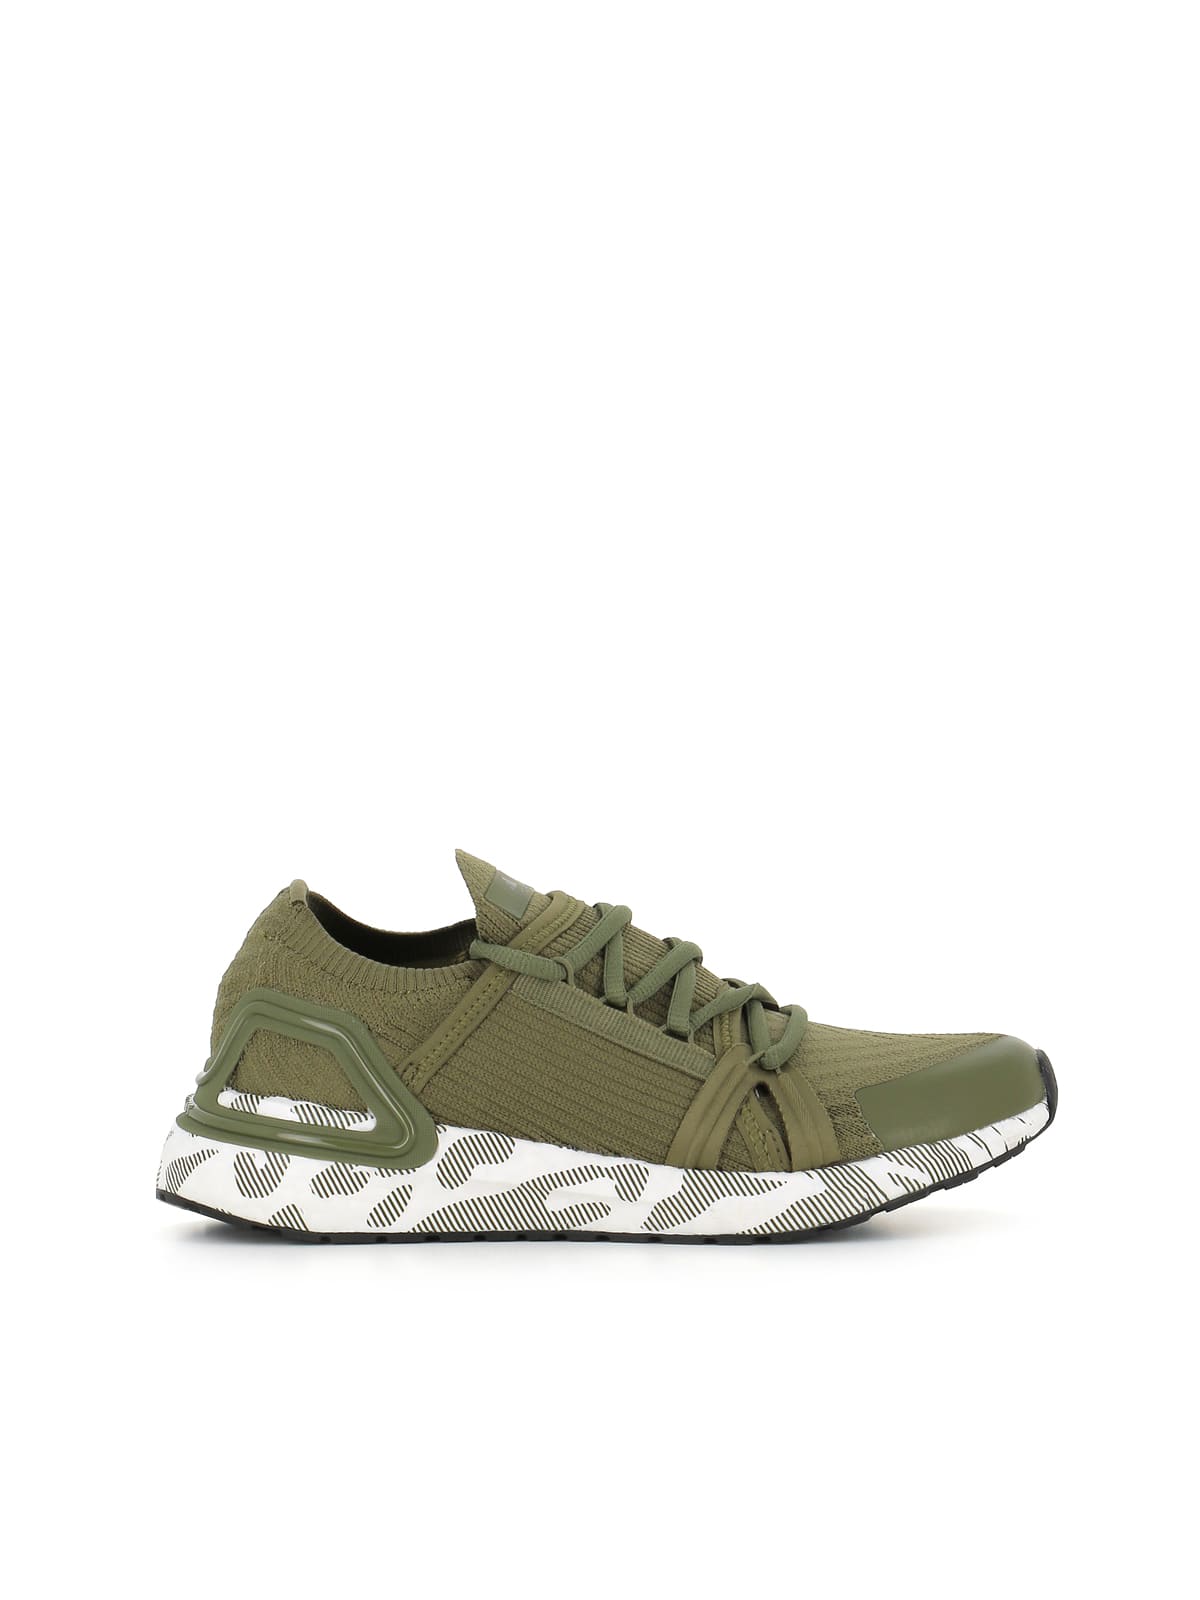 Shop Adidas By Stella Mccartney Sneakers Asmc Ultraboost 20 In Green